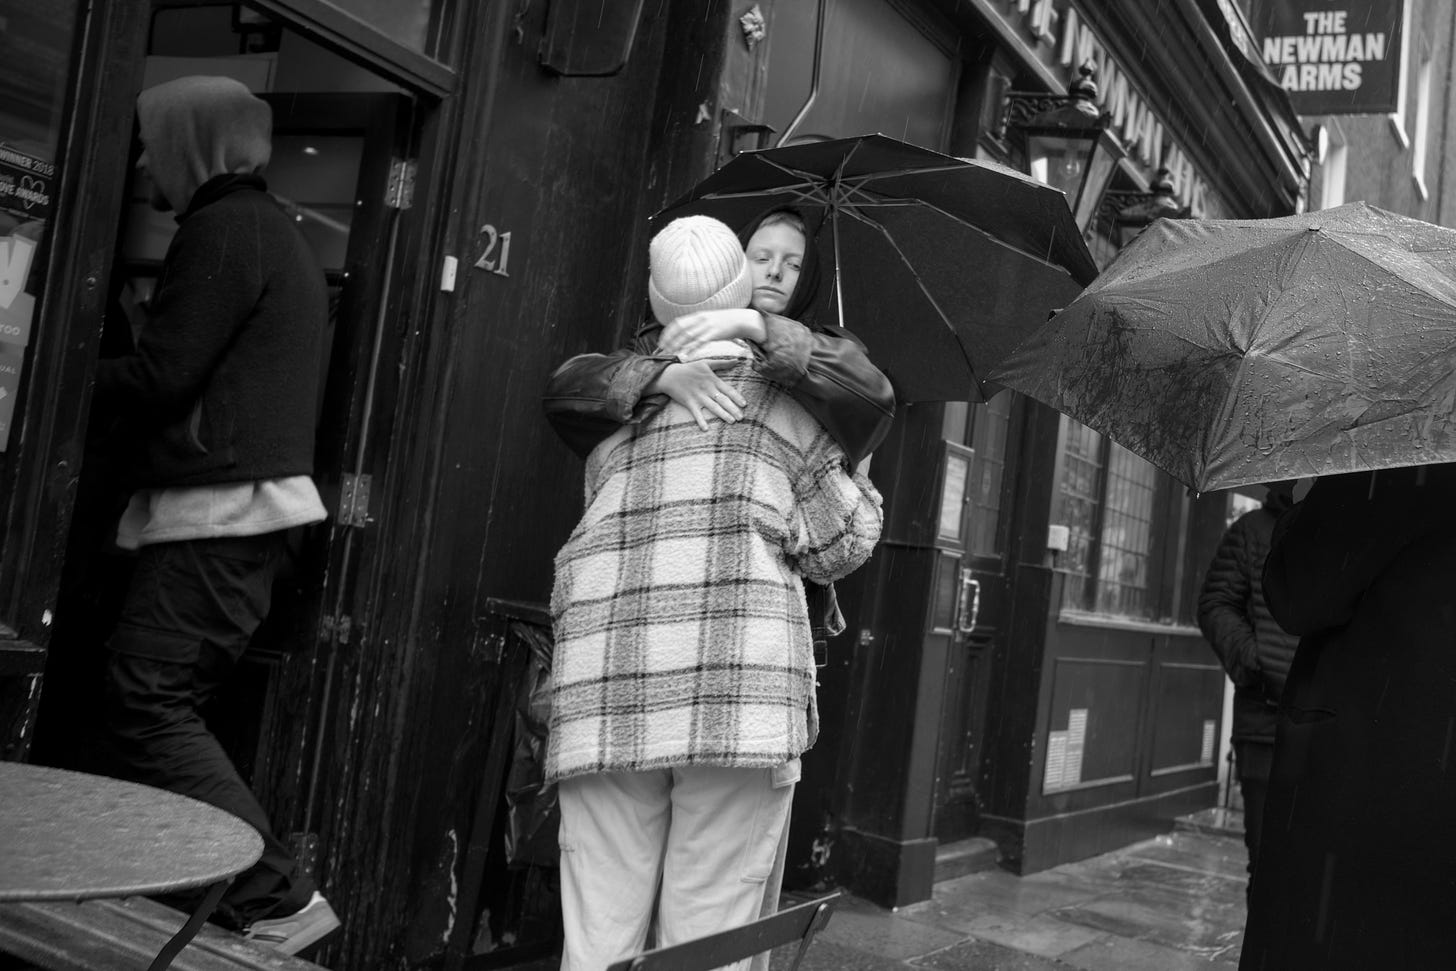 Two people hug outside a London pub